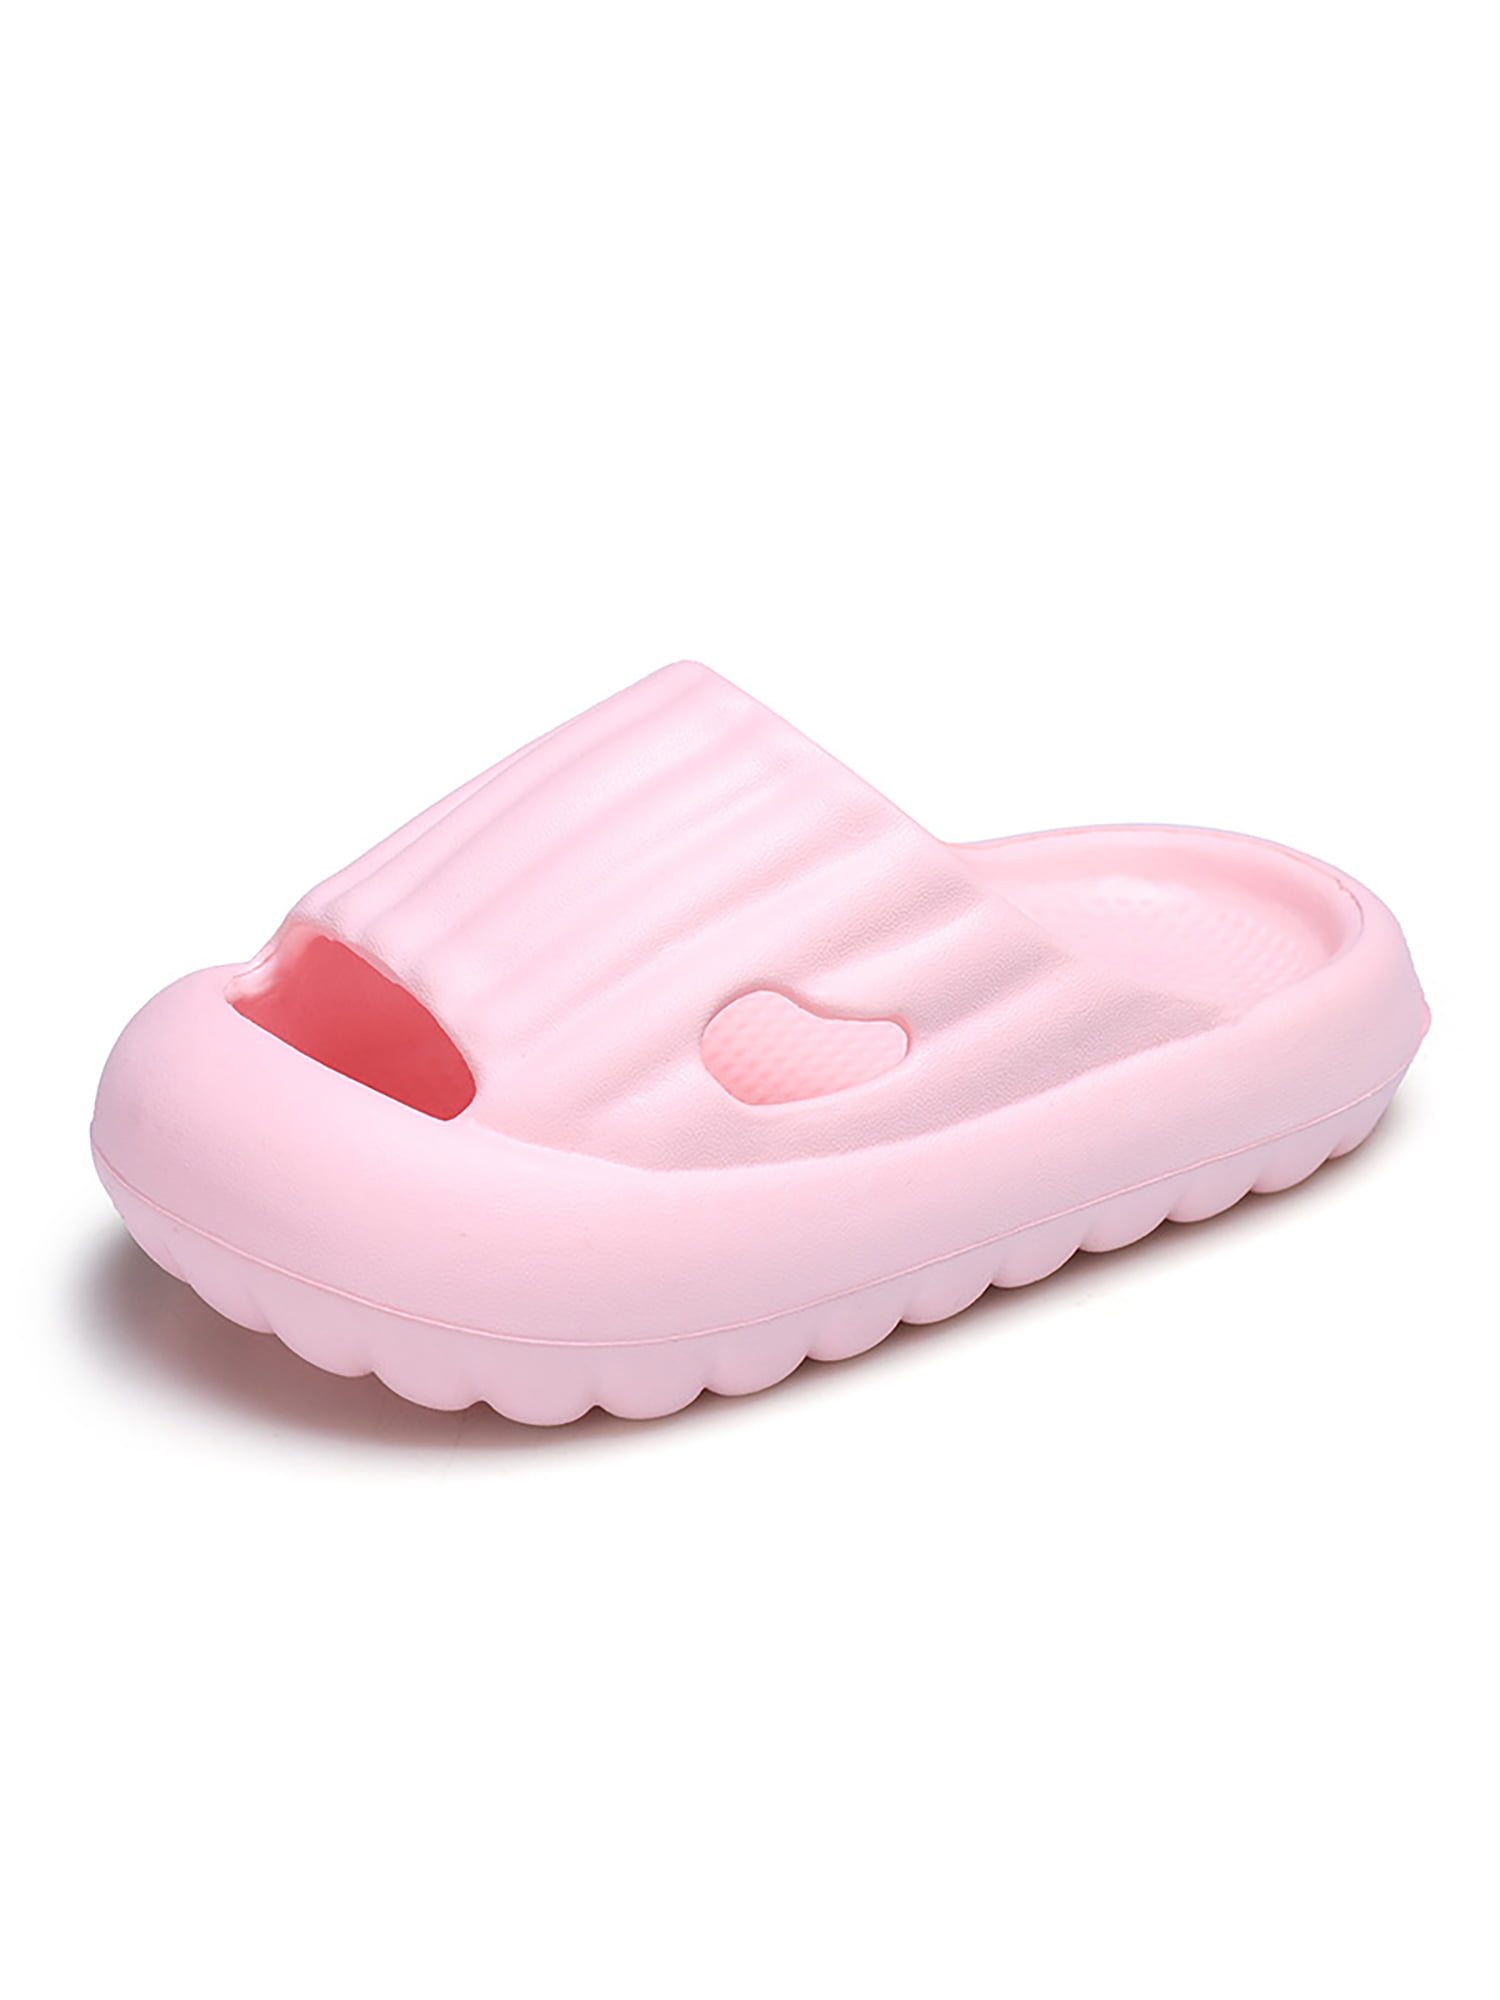 Kids Summer Slipper Glow in The Dark House Slippers Shower Slide Anti-Slip Beach Pool Bath Sandals for Boys Girls